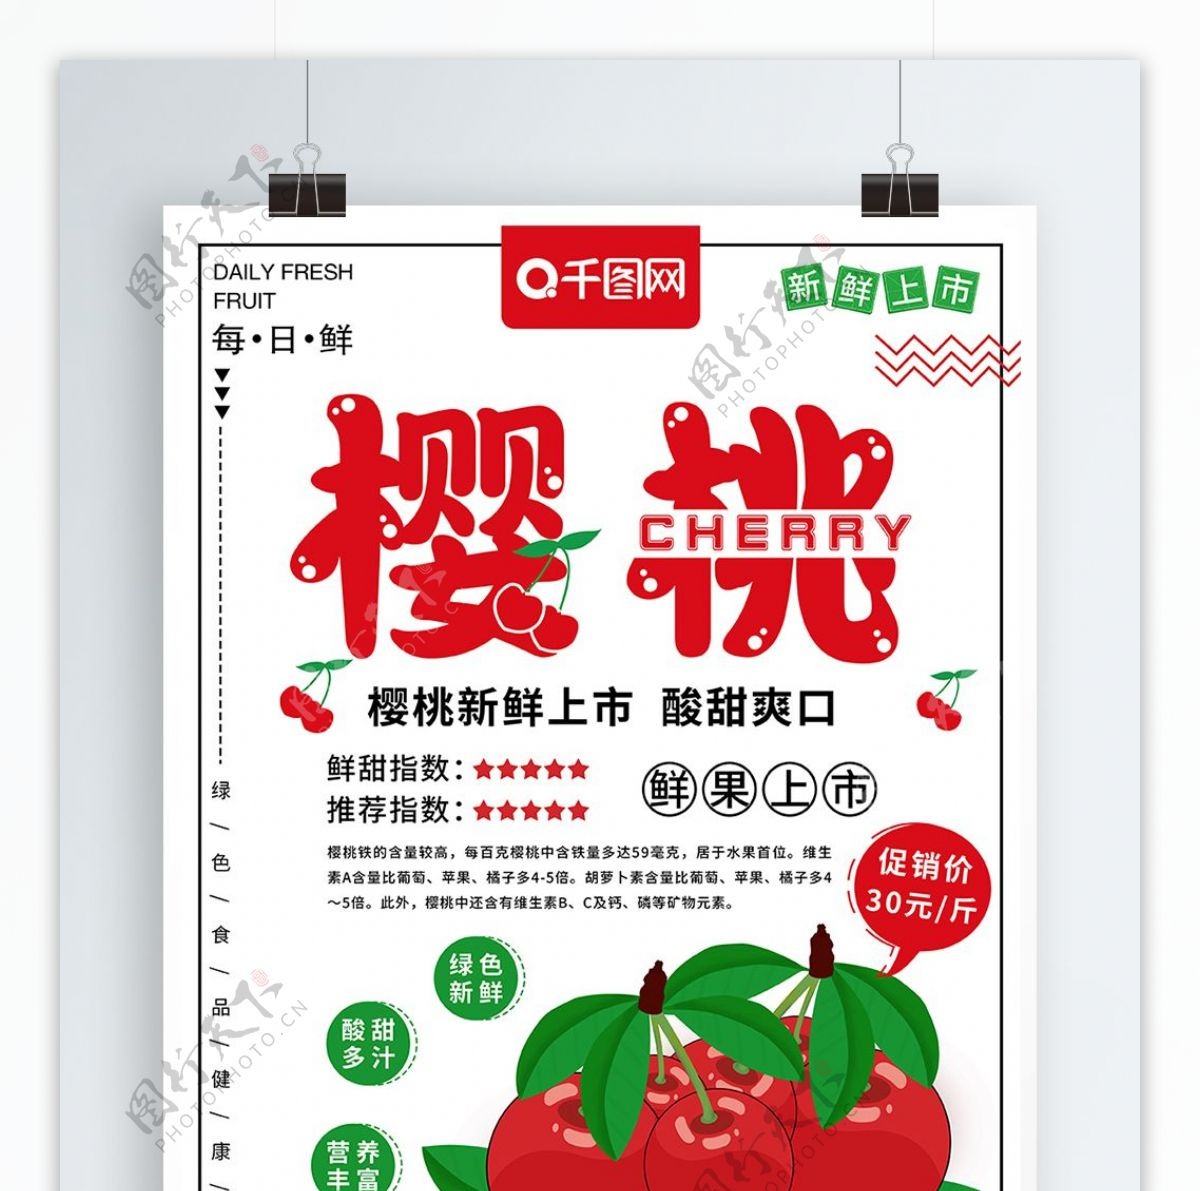 原创手绘樱桃水果食物促销海报